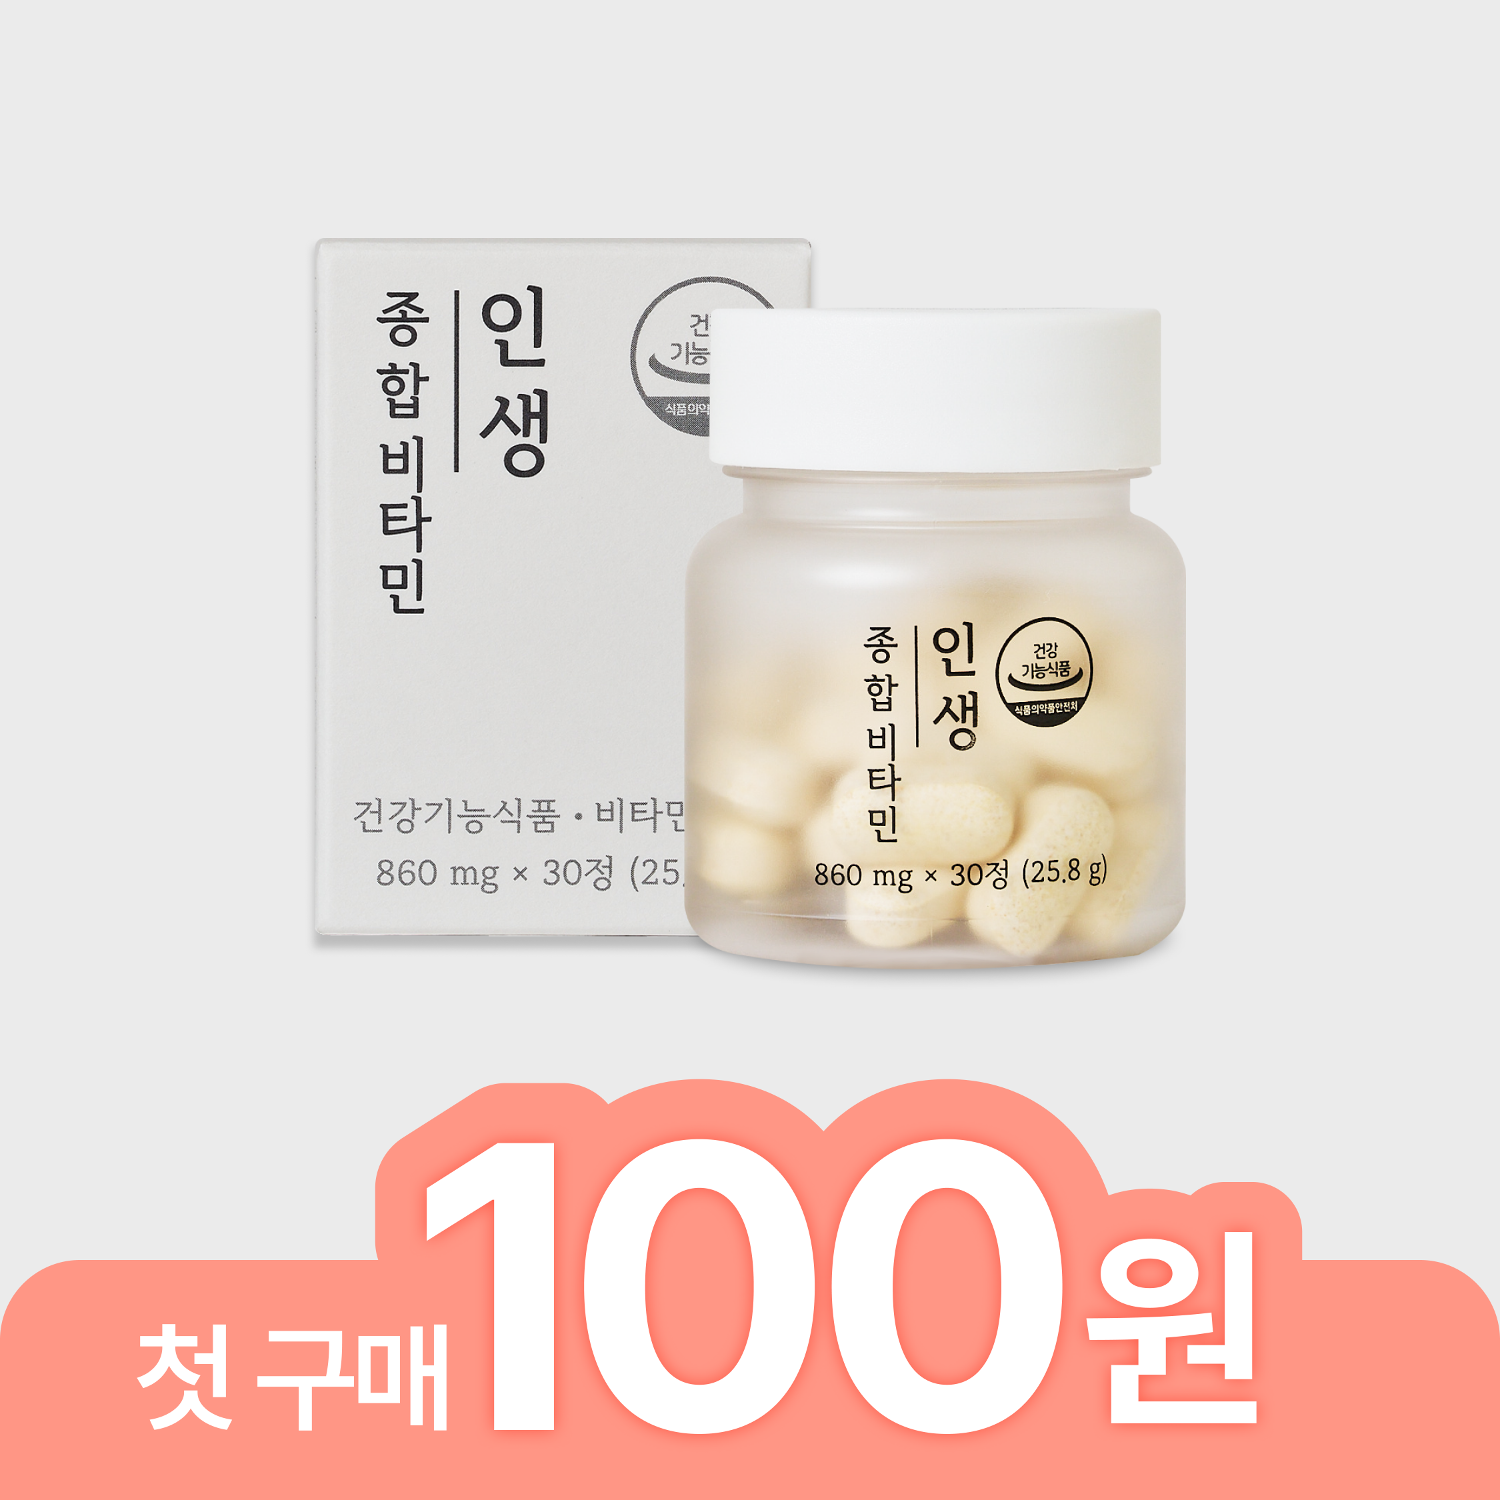 [첫 구매 100원] 인생종합비타민